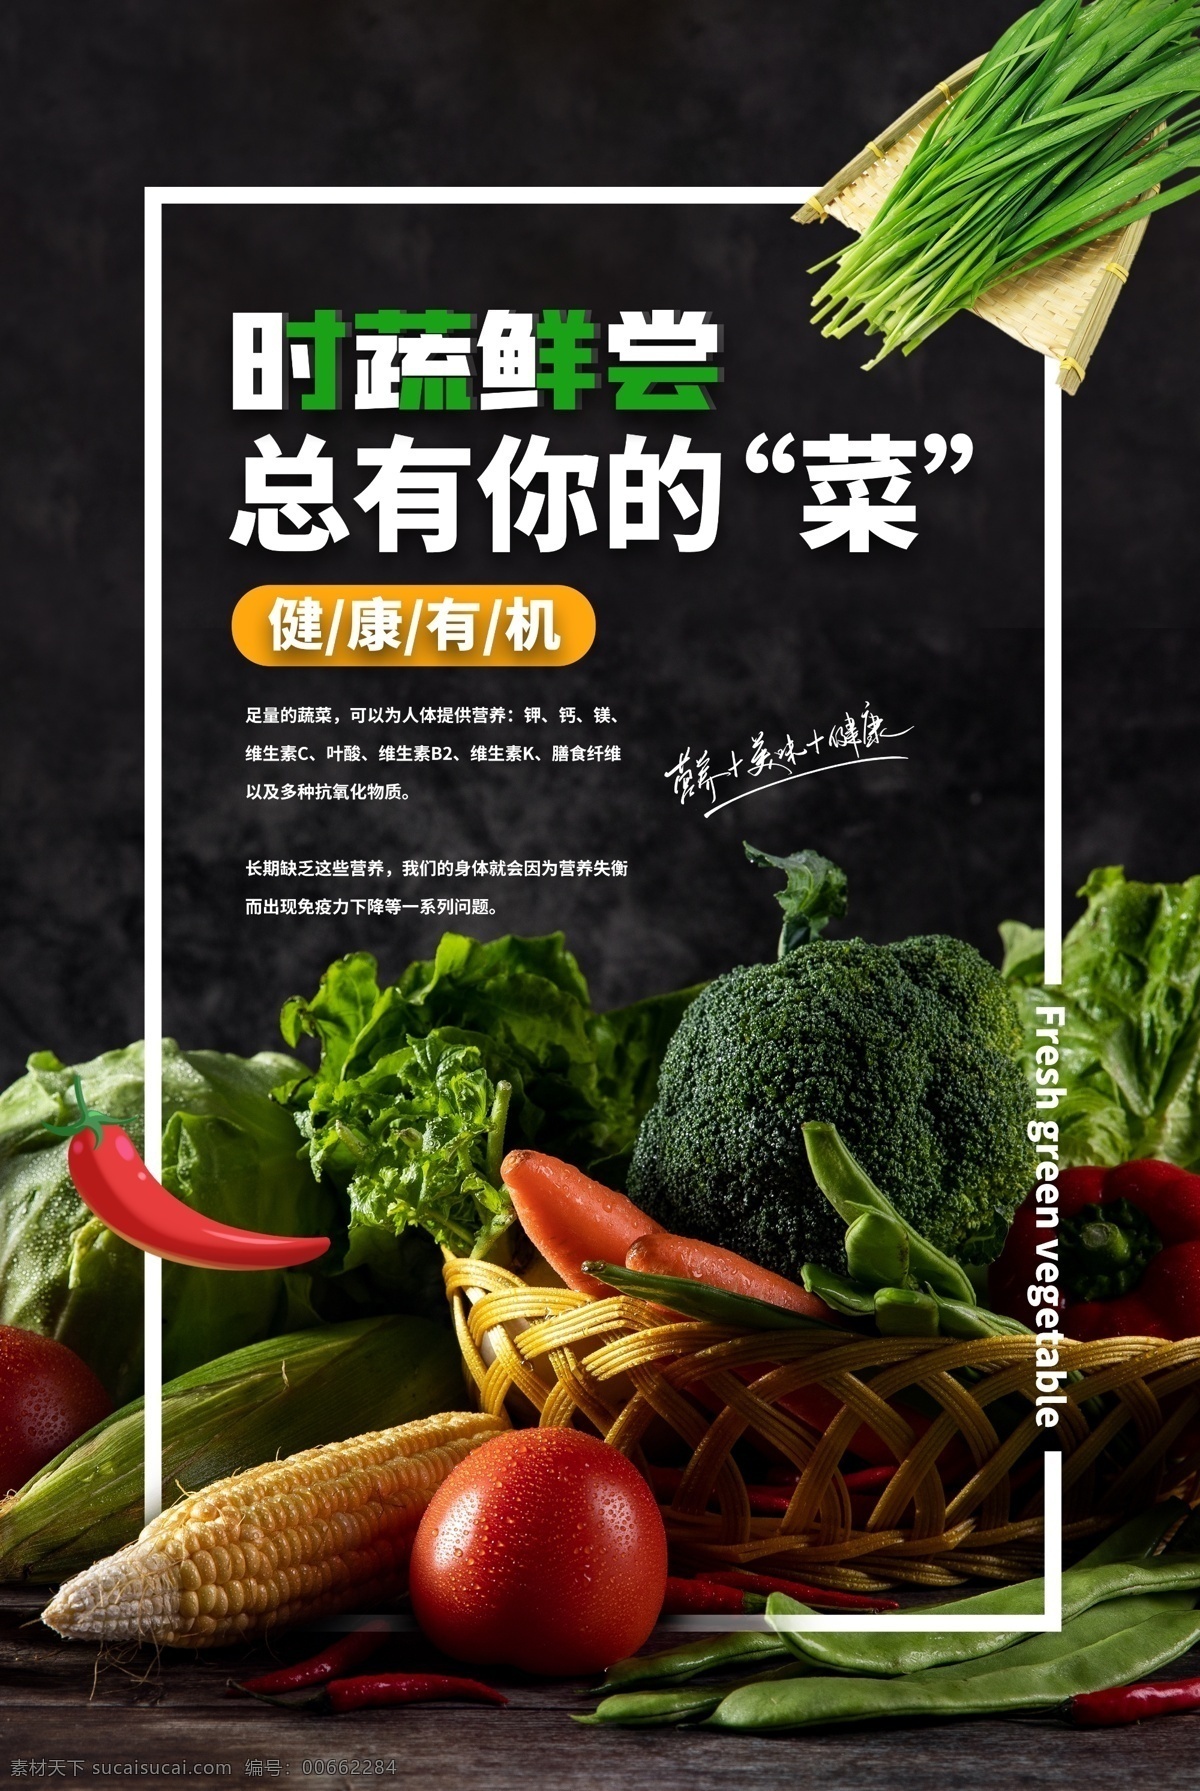 时蔬 水果 宣传 活动 海报 素材图片 时蔬水果 餐饮美食 类